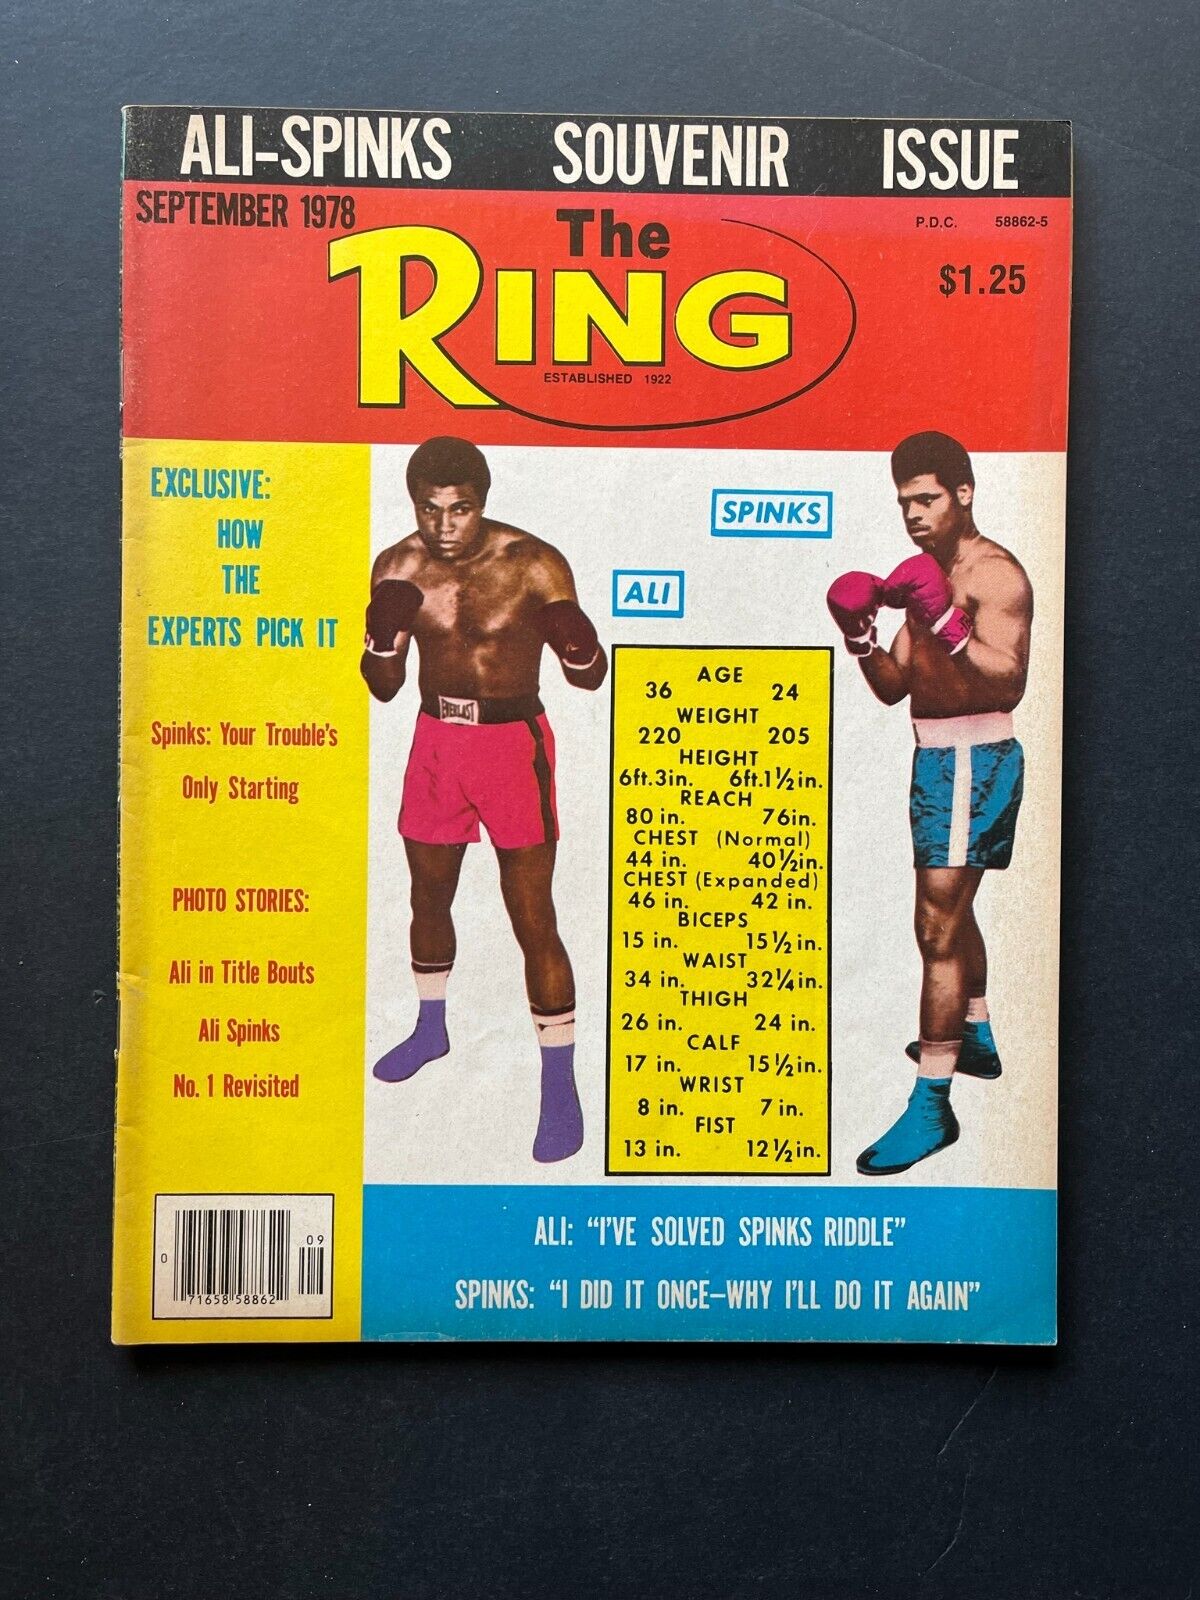 September 1978 "The Ring" Magazine – Ali-Spinks Souvenir Issue